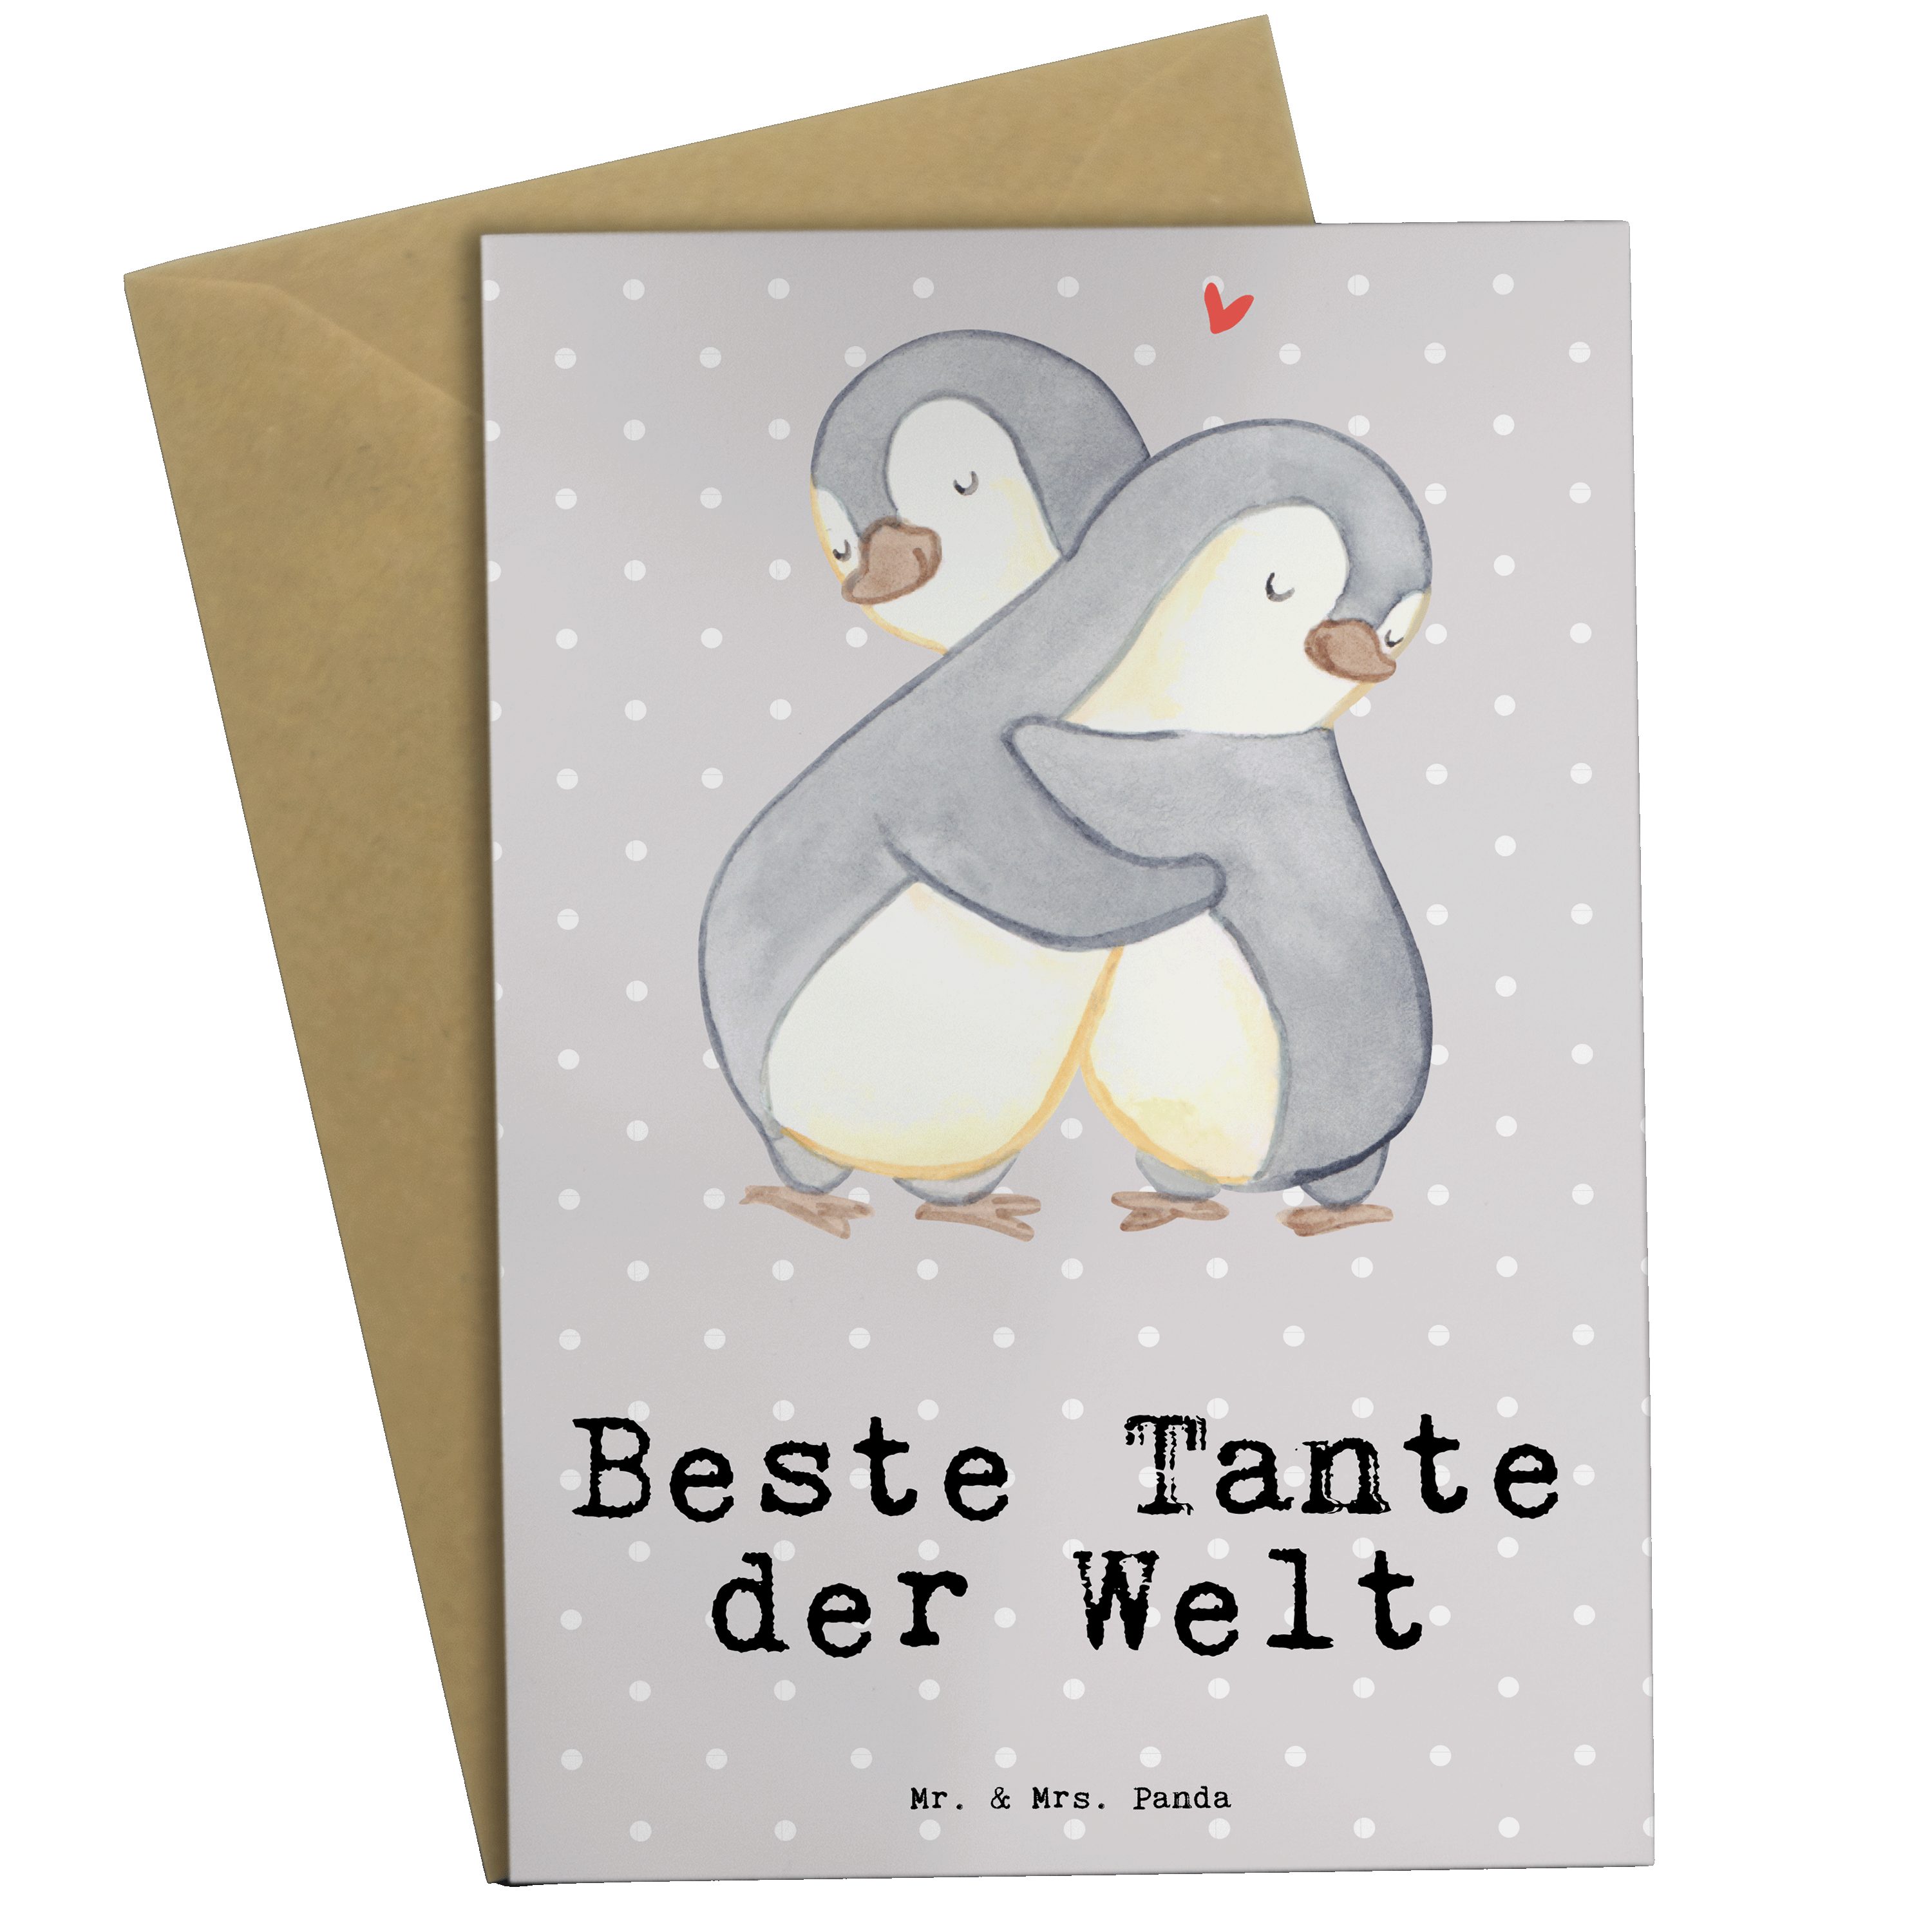 Mr. & Mrs. Panda Grußkarte Pinguin Beste Tante der Welt - Grau Pastell - Geschenk, Danke, Einlad